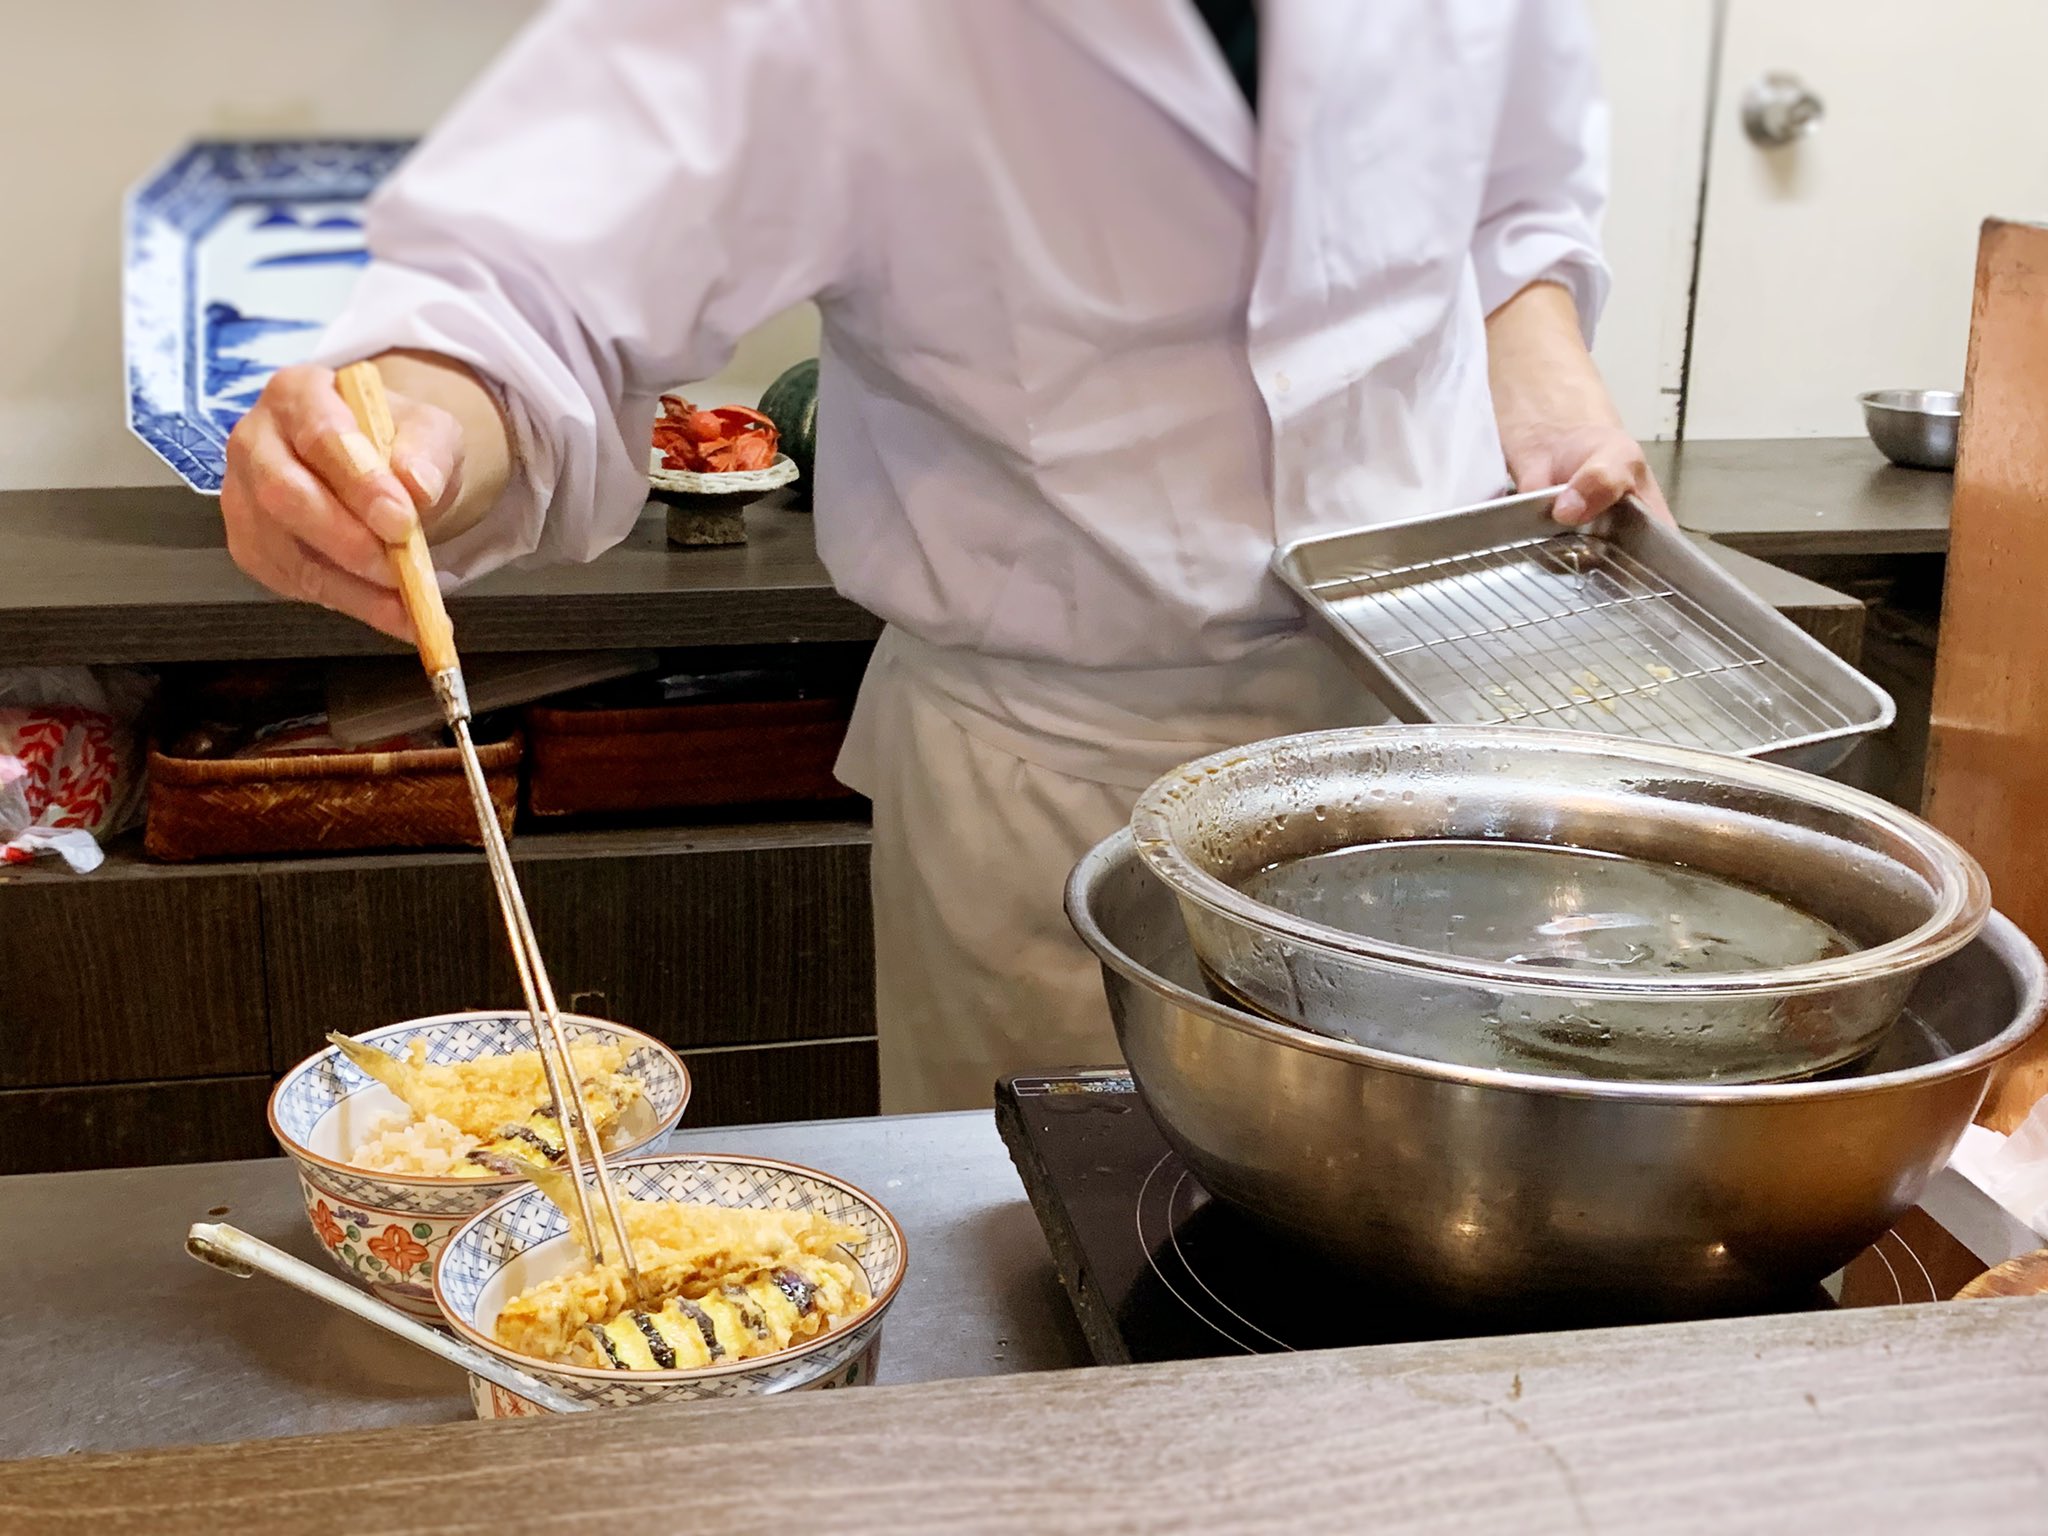 株式会社テレコメディア カウンターに座ると 揚げたての天ぷらが次々とご飯に盛り付けられる様子を間近で見ることができました 一緒に頂いた赤味噌のお味噌汁にサラダ お漬物も上品な味でとても美味しかったです 帰りに無料で天かすも頂きました